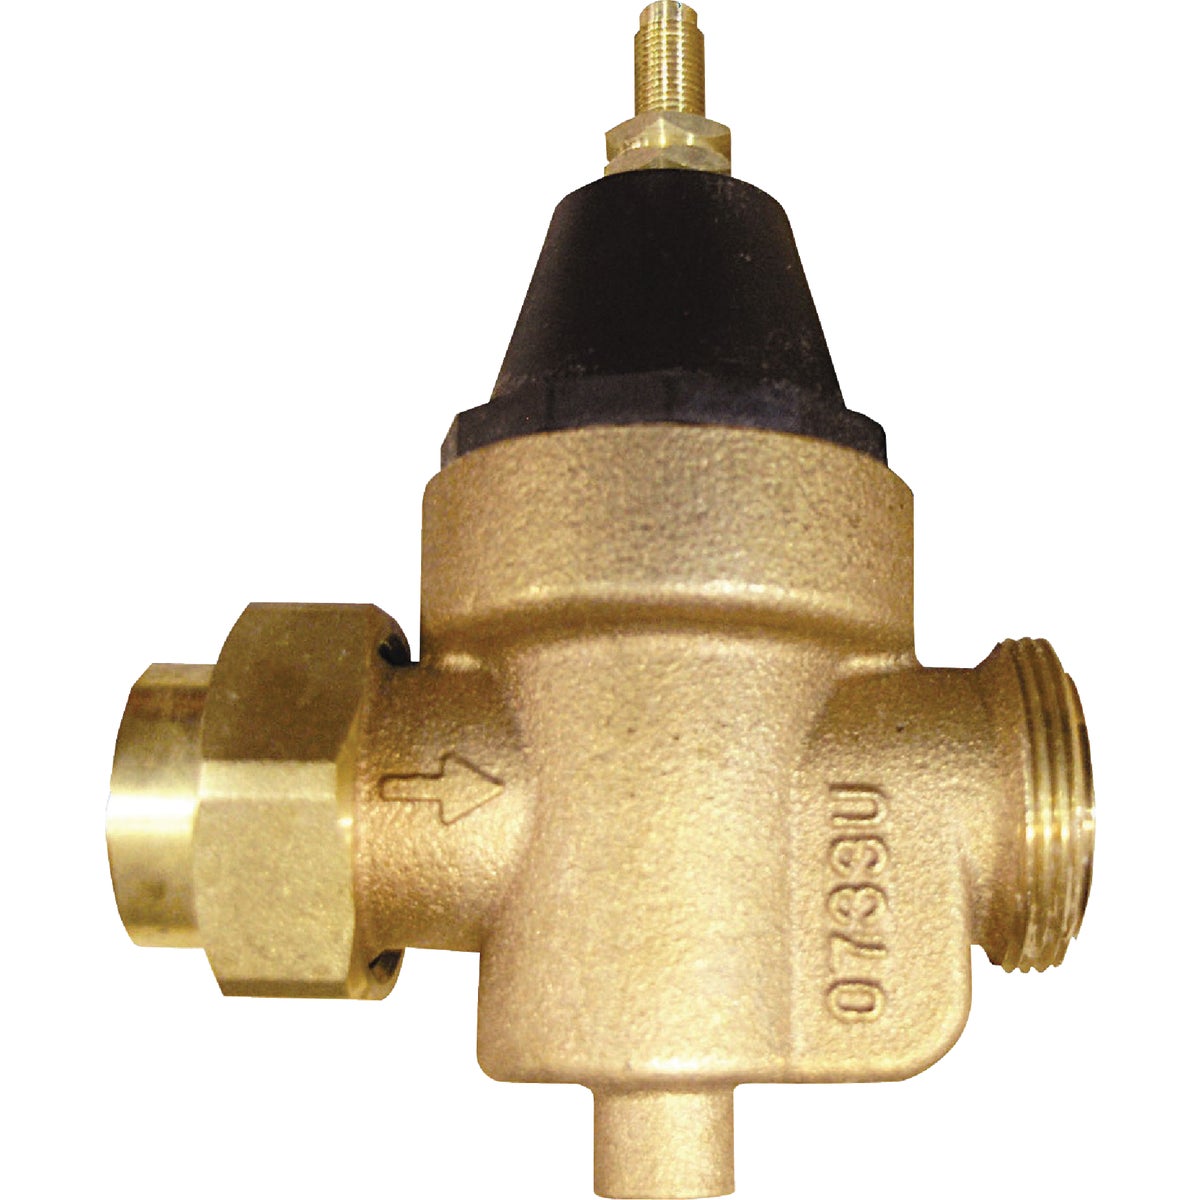 Item 461734, Lead-free series N45 standard capacity water pressure reducing valves are 